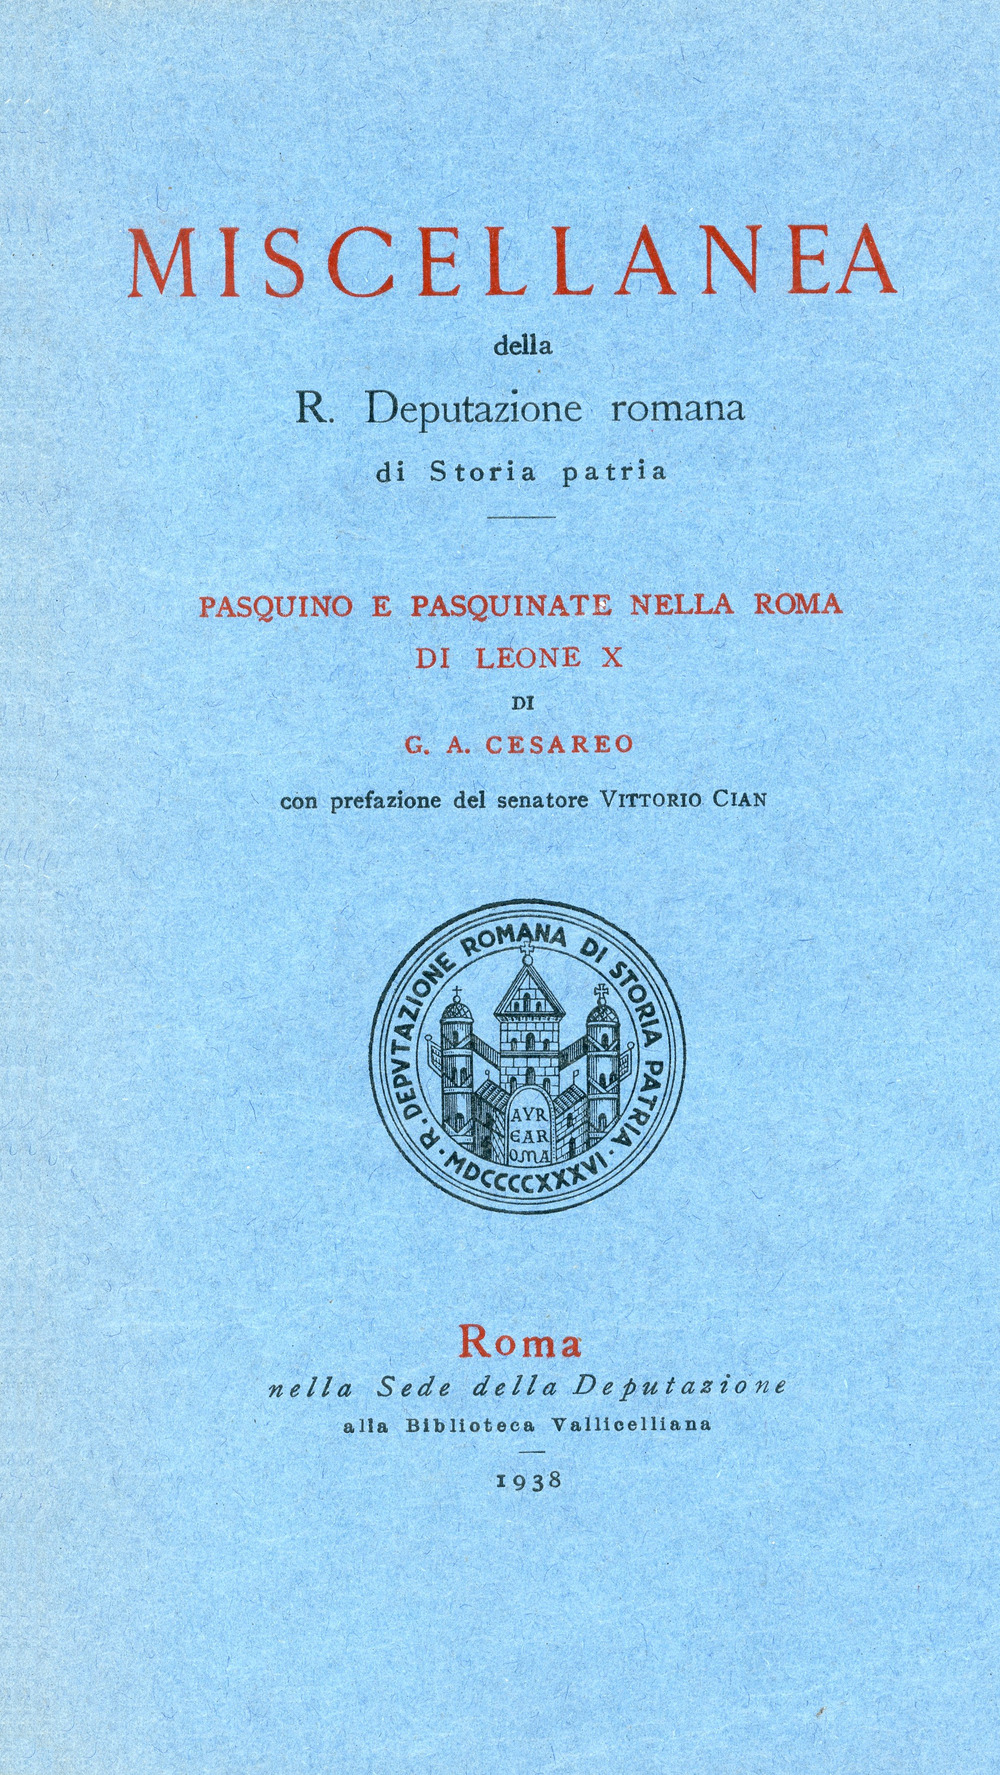 Pasquino e pasquinate nella Roma di Leone X